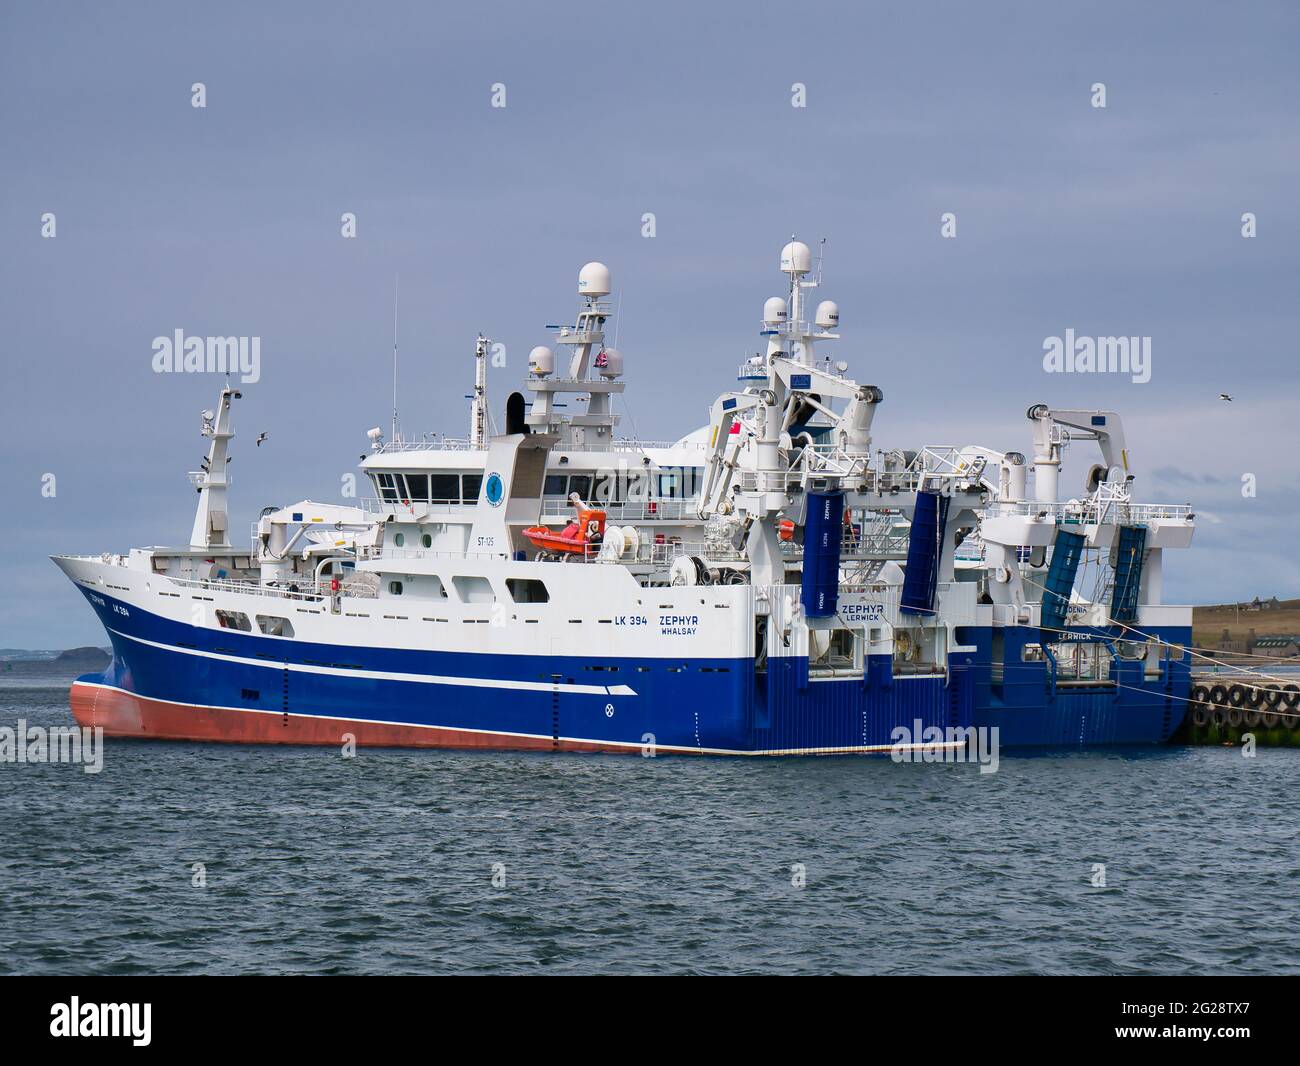 Amarrado en el puerto de Lerwick, arrastreros de la flota pesquera comercial pelágica de Shetland. Foto de stock